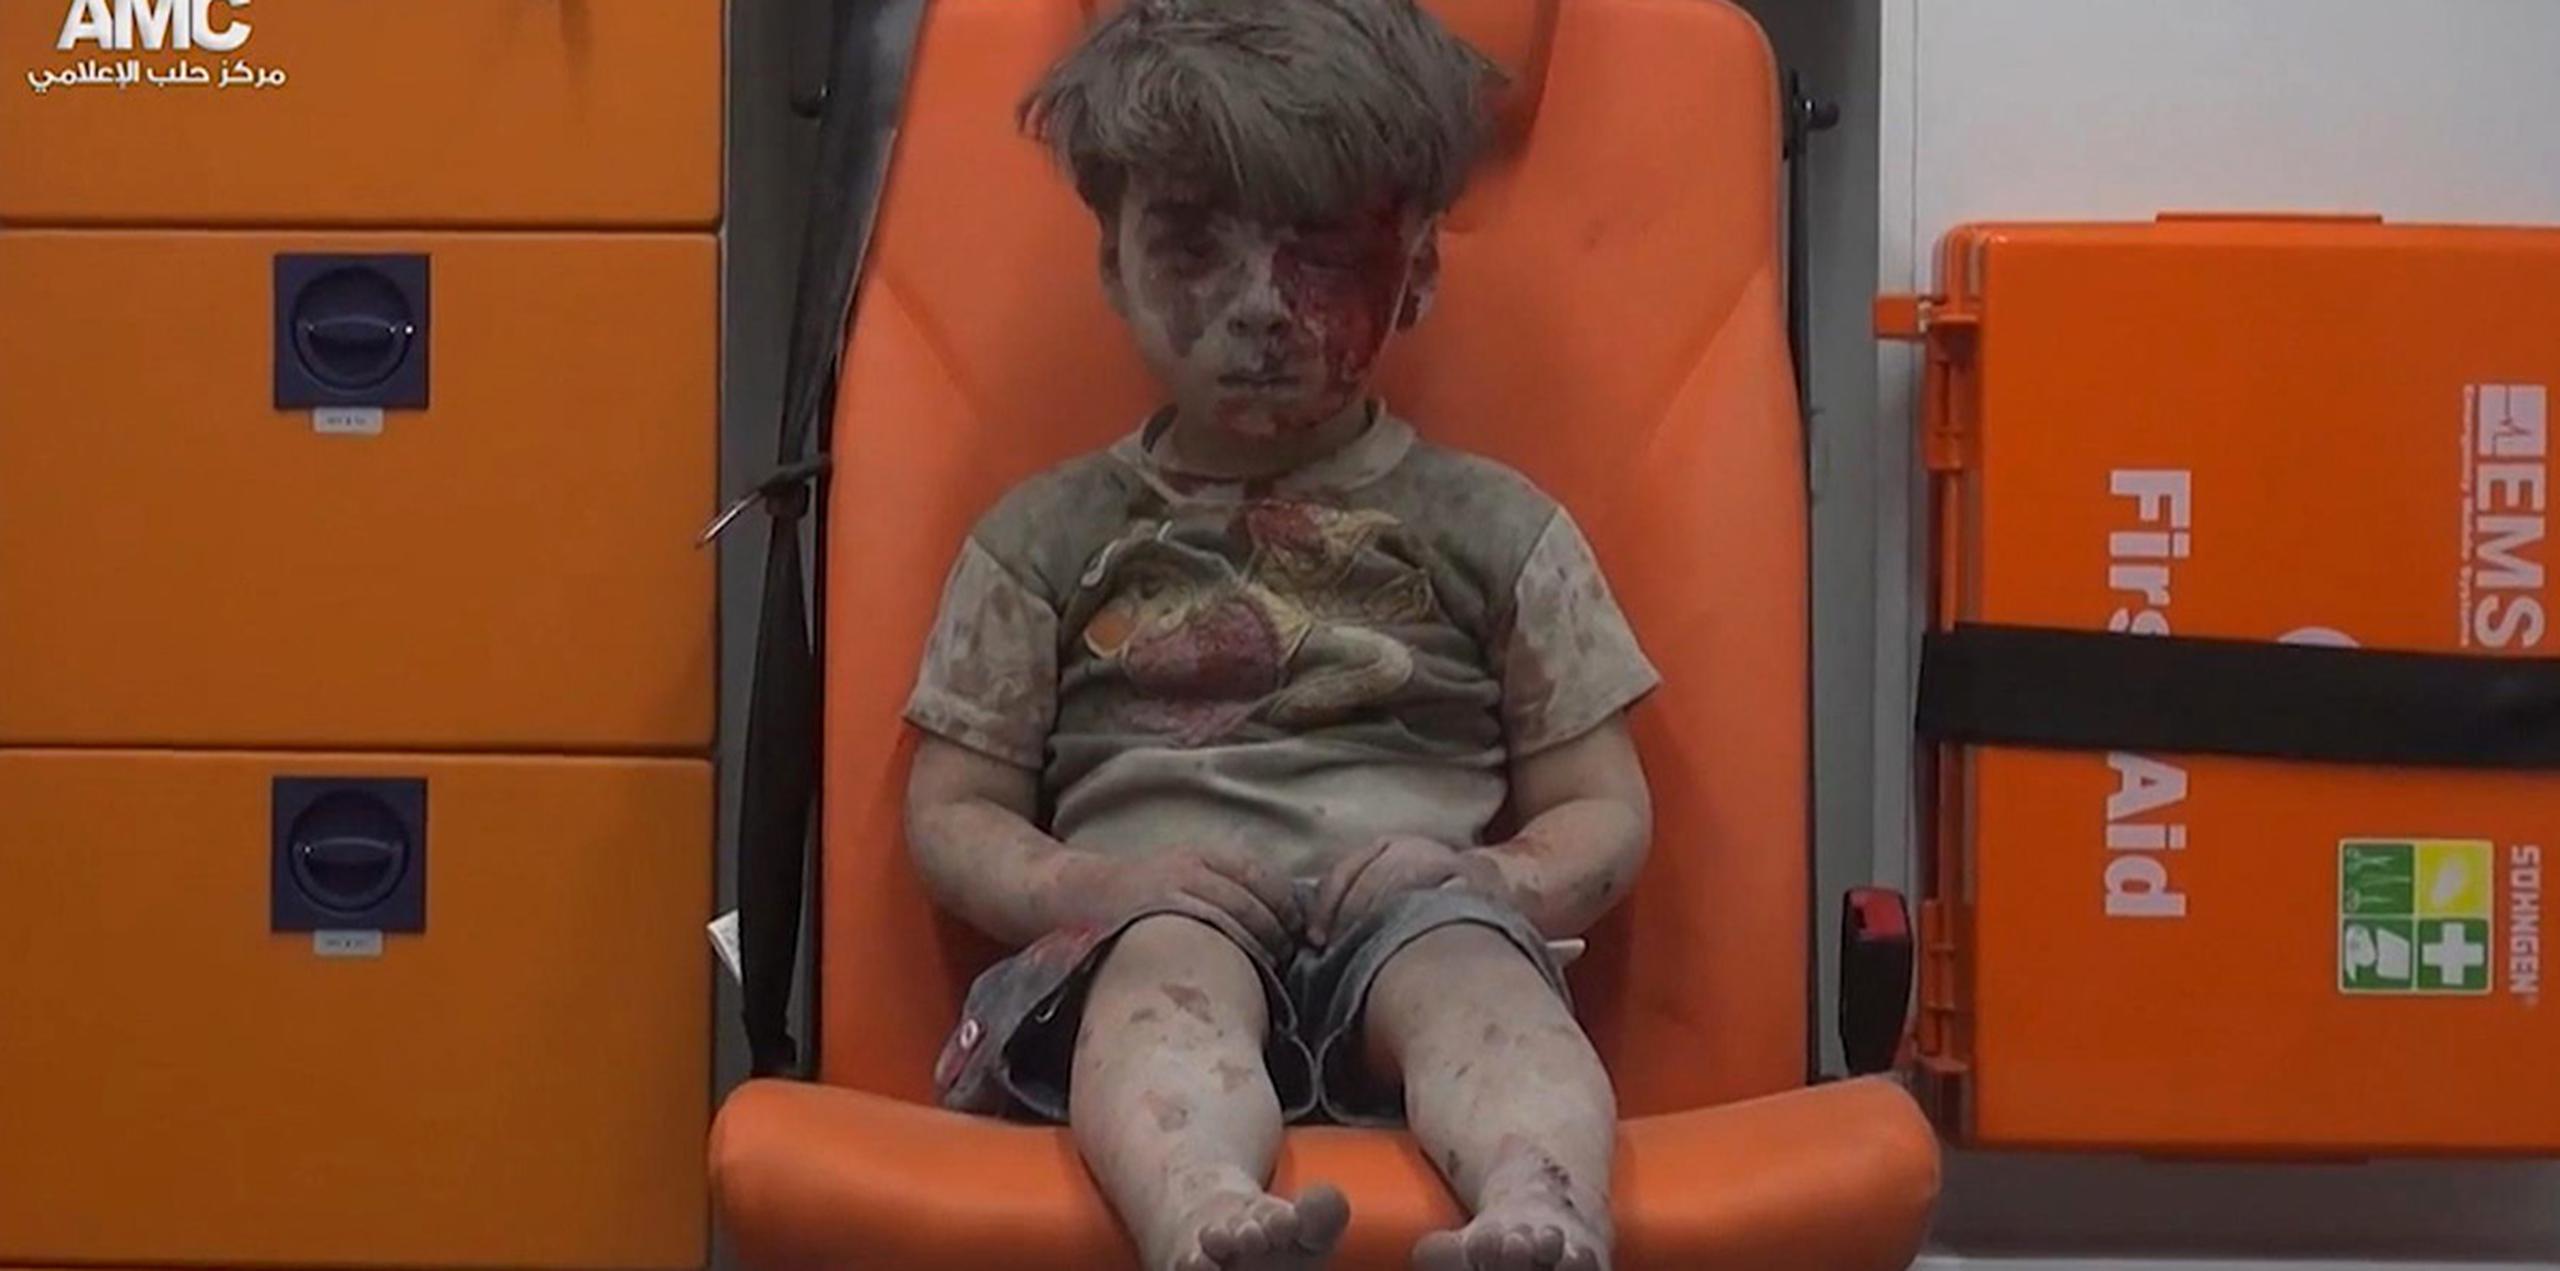 La imagen del pequeño, aturdido y cansado, sentado en la silla naranja de una ambulancia, cubierto de polvo y con sangre en la cara, pone cara al horror de la guerra en la ciudad del norte del país y se ha compartido ya miles de veces en medios sociales. (AP)